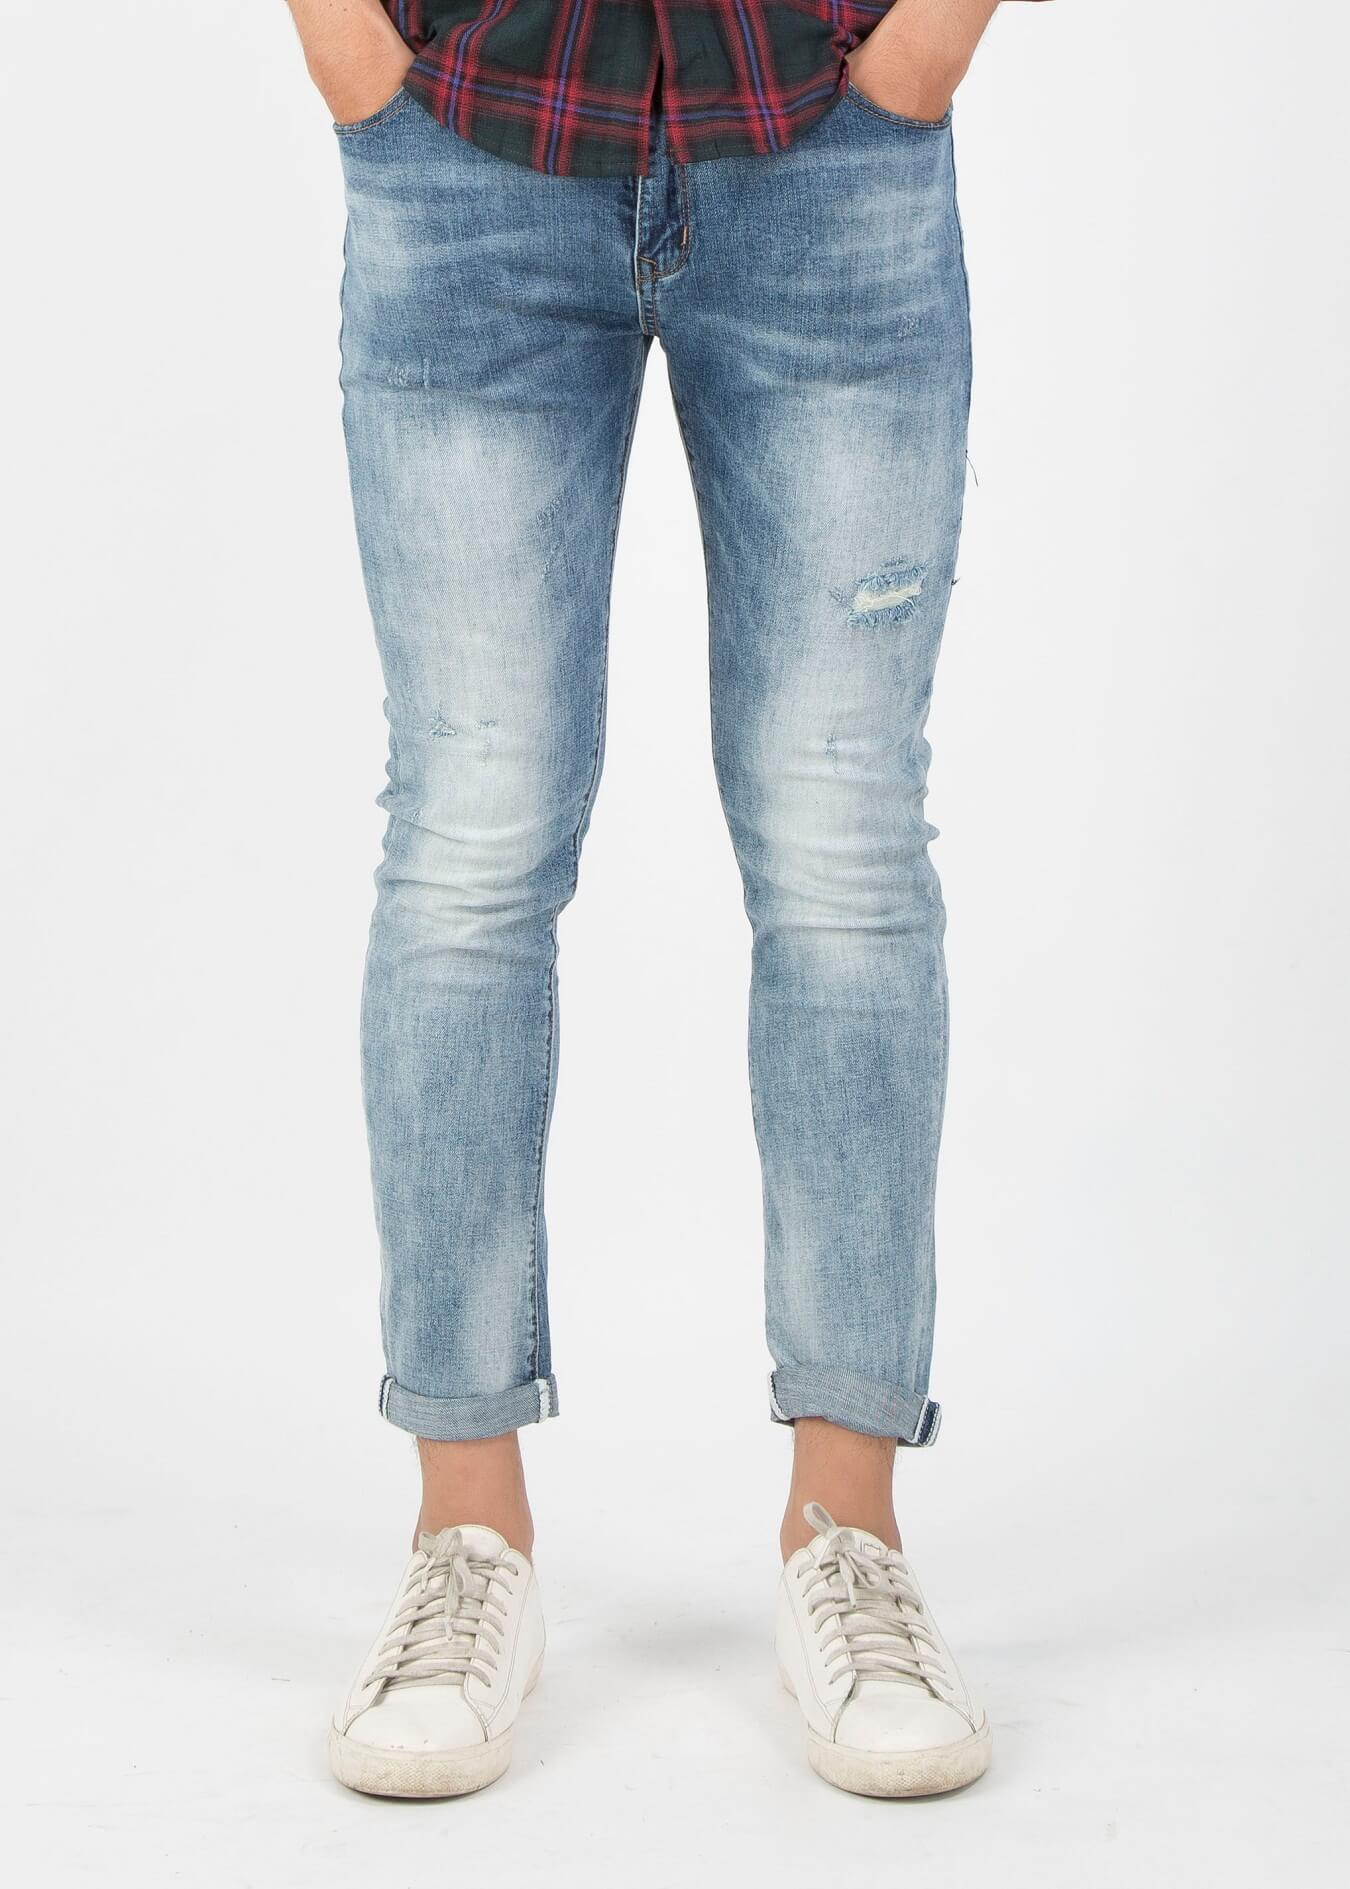 Một kiểu quần jeans skinny basic, với ống chân bó sát người mặc